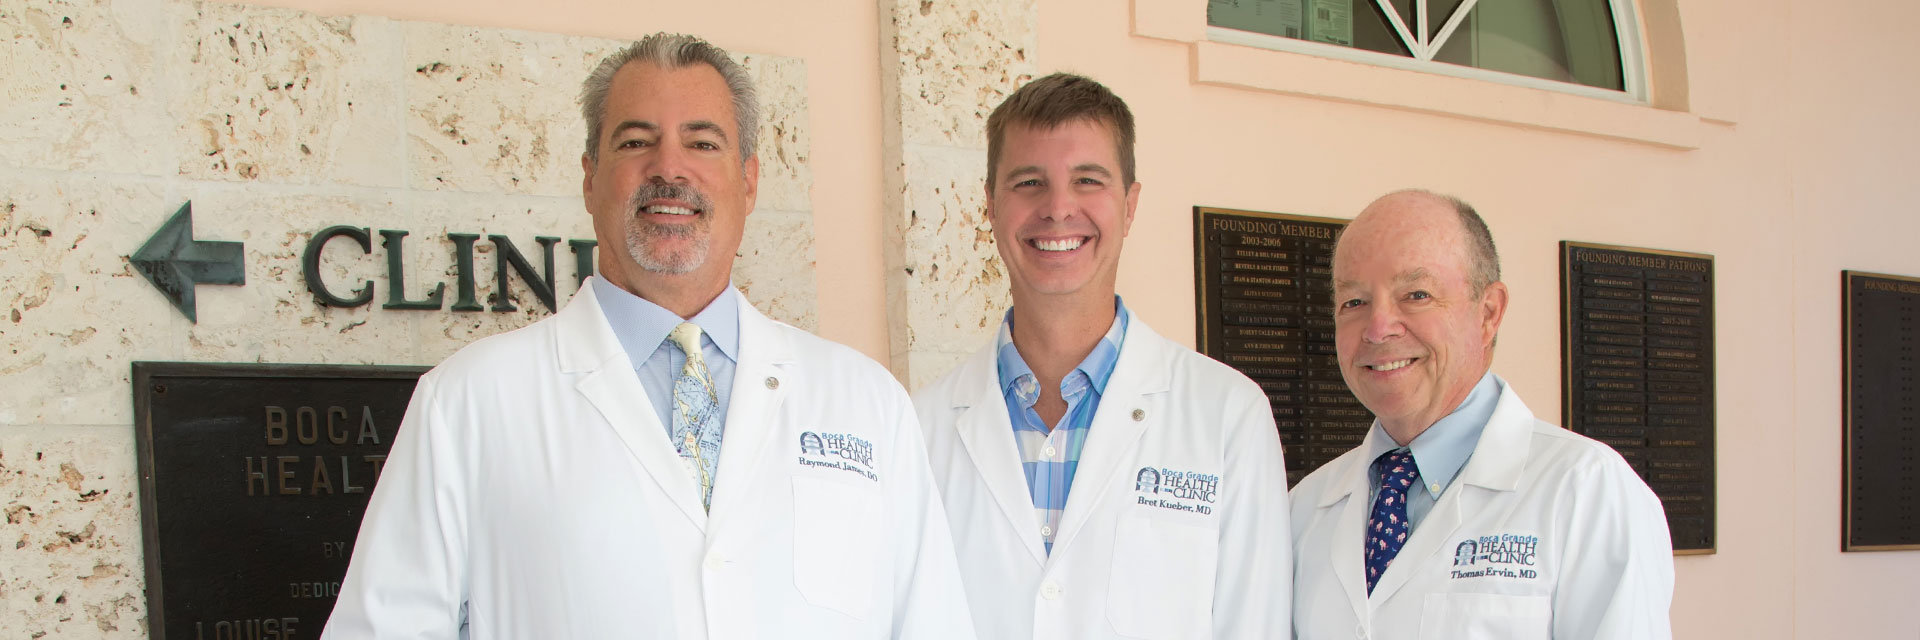 Dr. James, Dr. Kueber, and Dr. Ervin at the Boca Grande Health Clinic